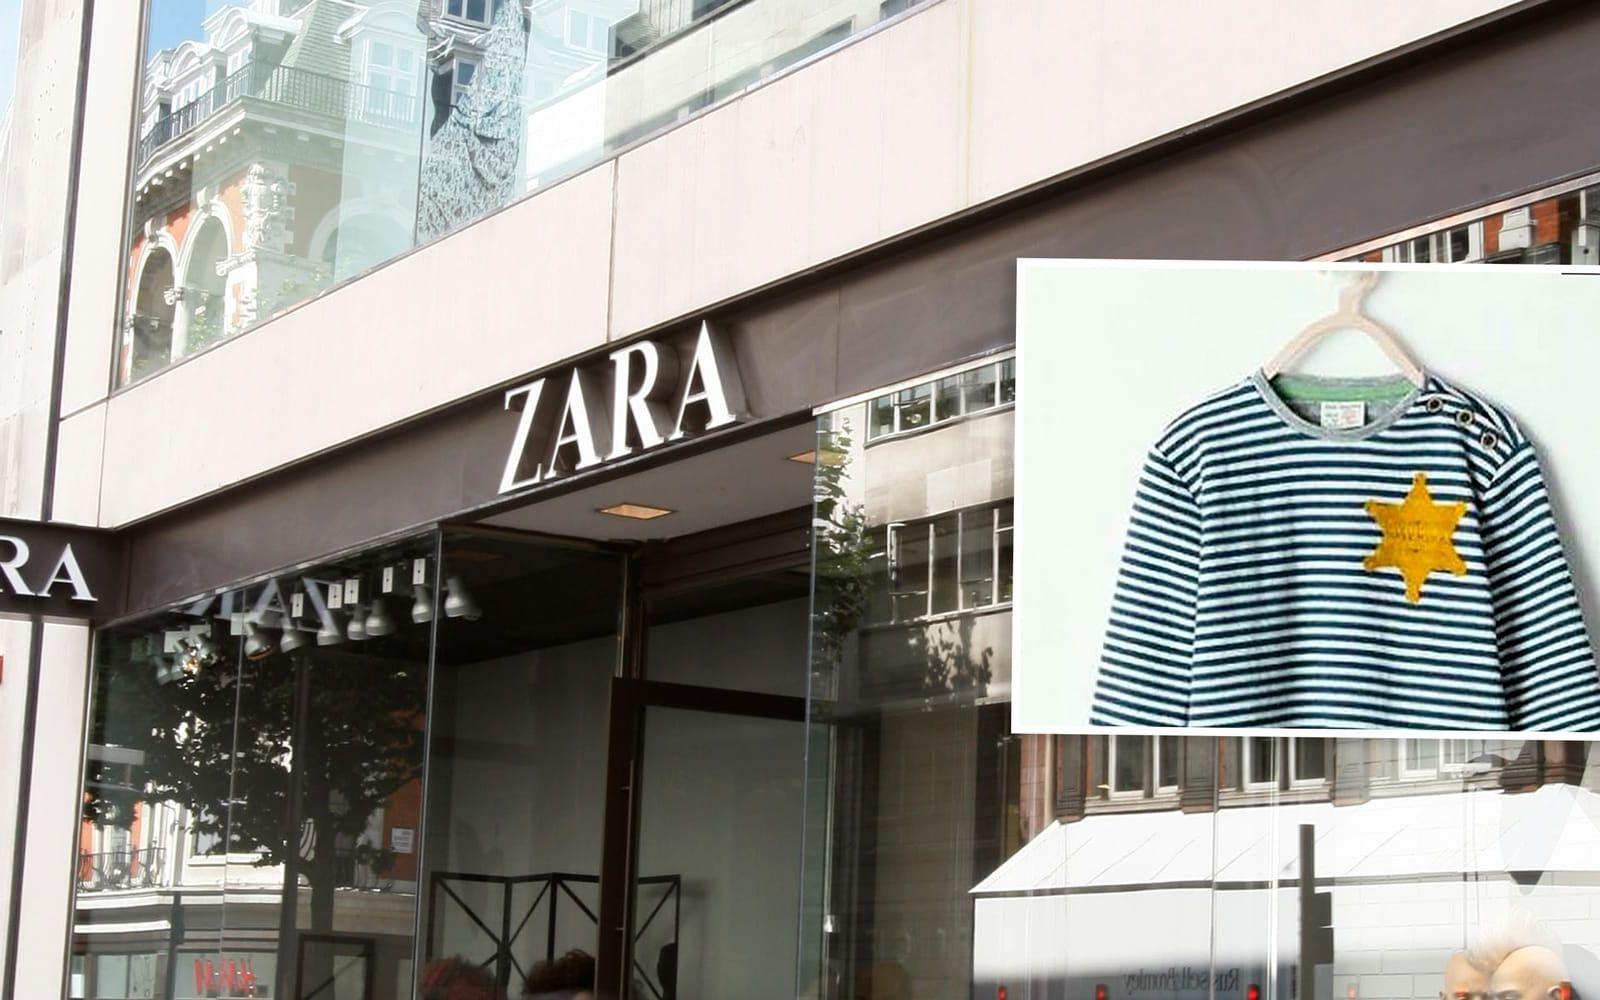 <strong>ZARA 2014. Reklamen:</strong> Den spanska modejätten Zara säljer randiga barntröjor med gula stjärnor på. <strong>Kritiken:</strong> Zara orsakar stor ilska eftersom tröjorna liknar plaggen som judar tvingades bära i andra världskrigets koncentrationsläger. <strong>Efterspelet:</strong> Zara ber om ursäkt, agerar snabbt och tar bort plagget från sina hemsidor. Bolaget hävdar att den gula stjärnan var inspirerad av västernfilmer och sheriffer. Foto: TT/Zara